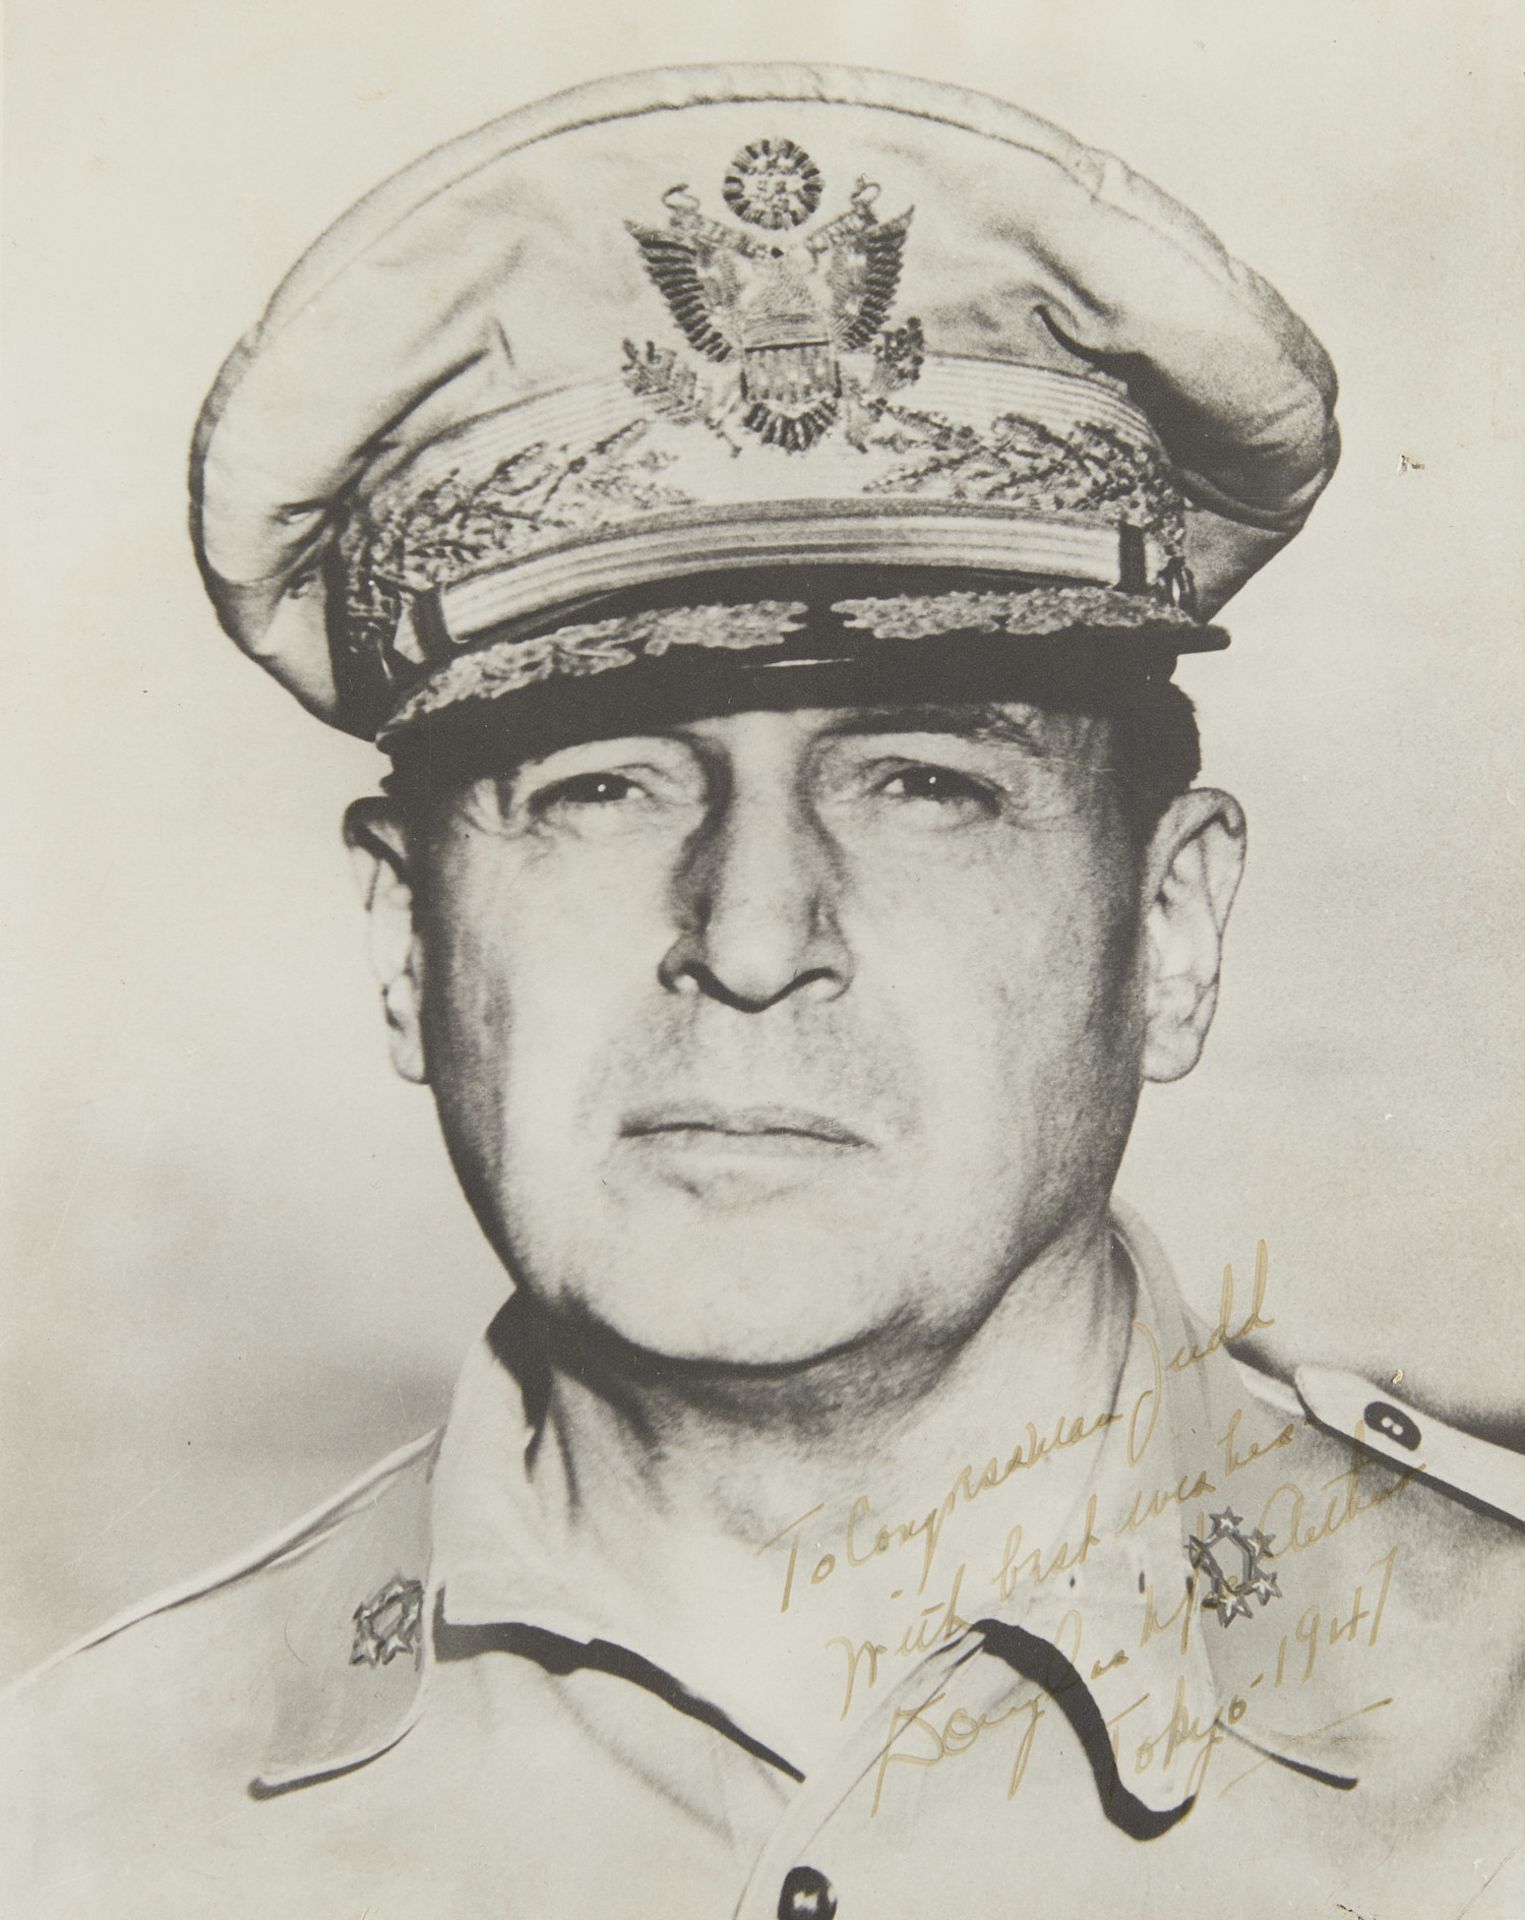 Autographed Photo of General Douglas MacArthur